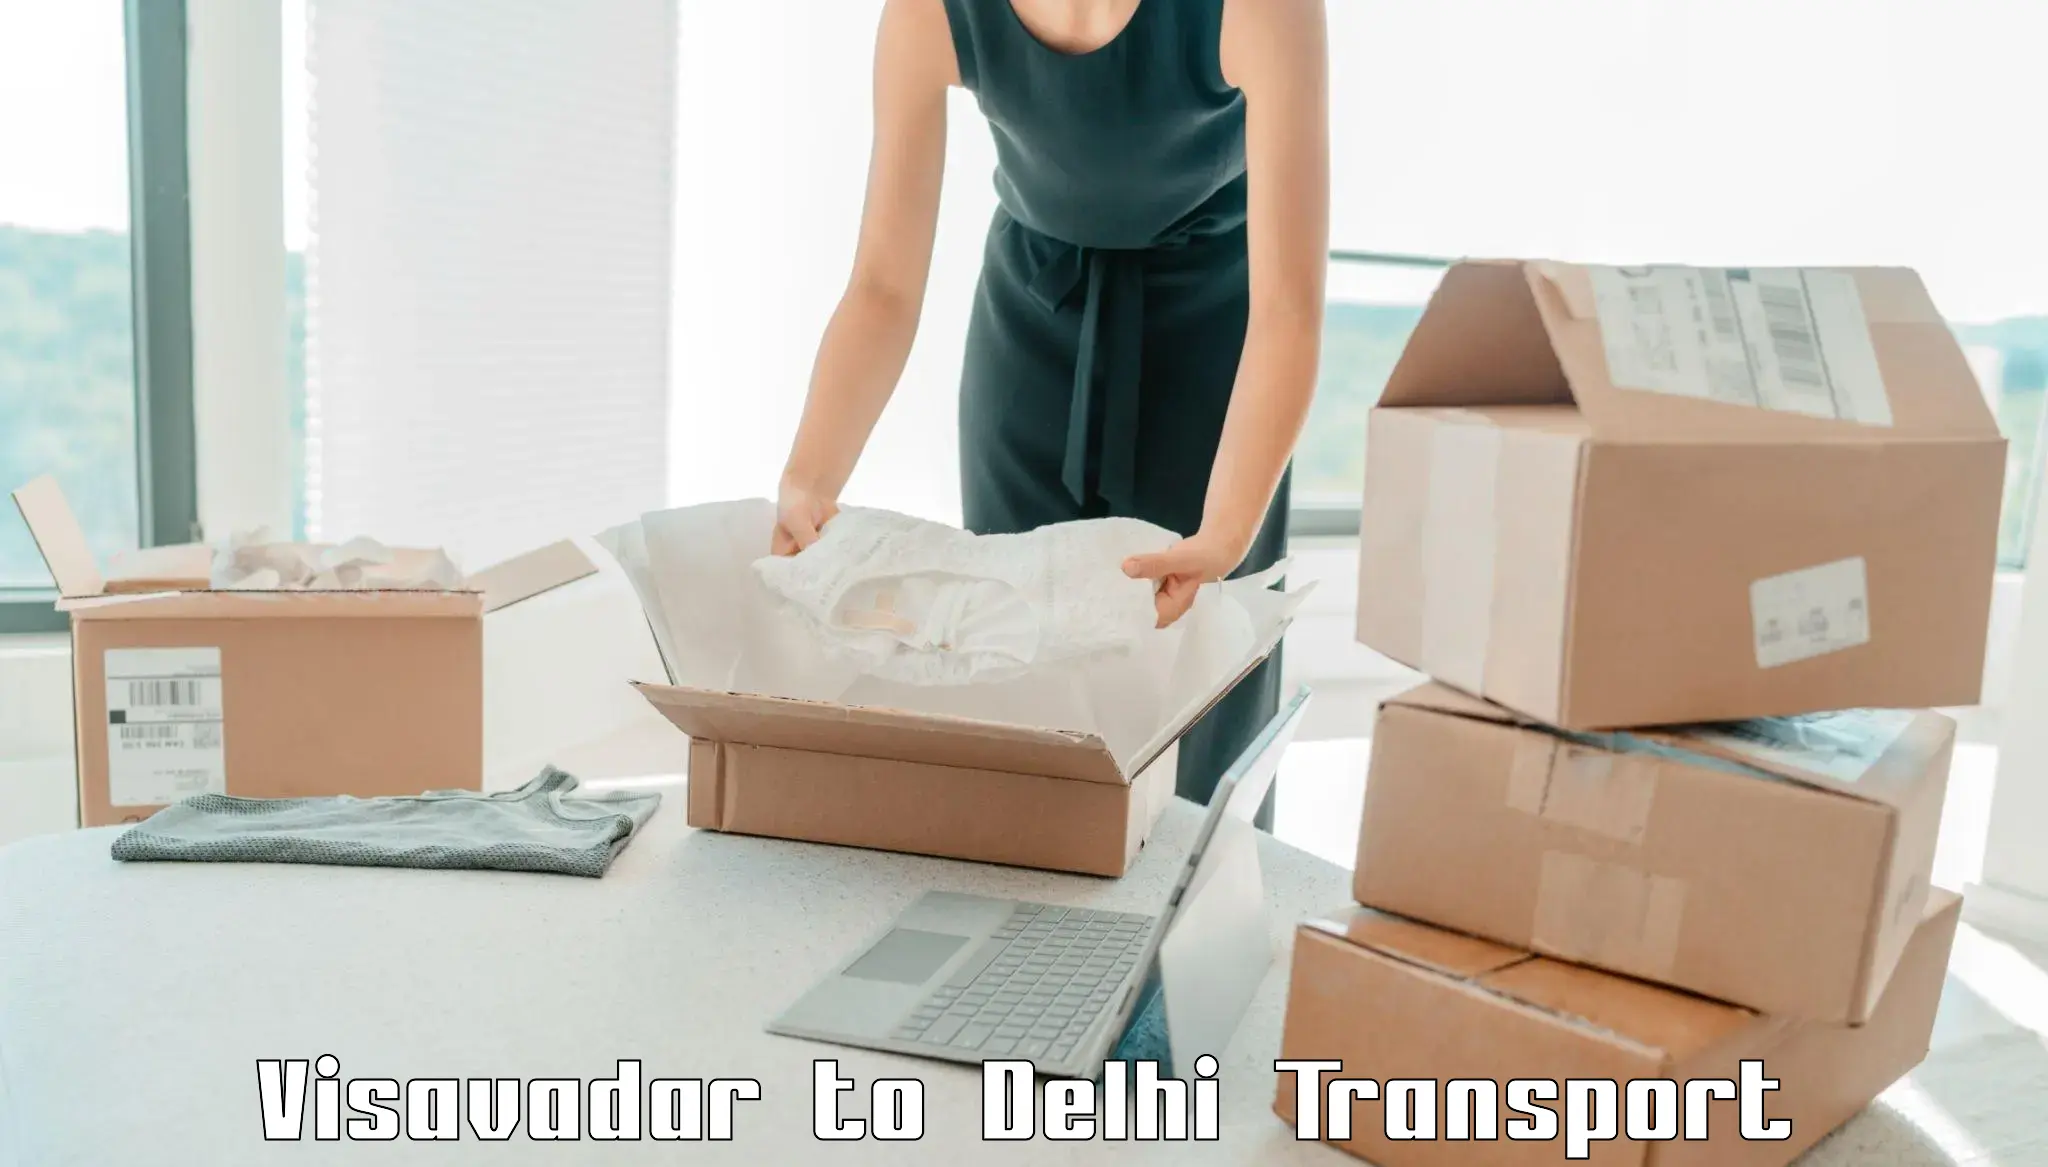 Nearby transport service Visavadar to University of Delhi